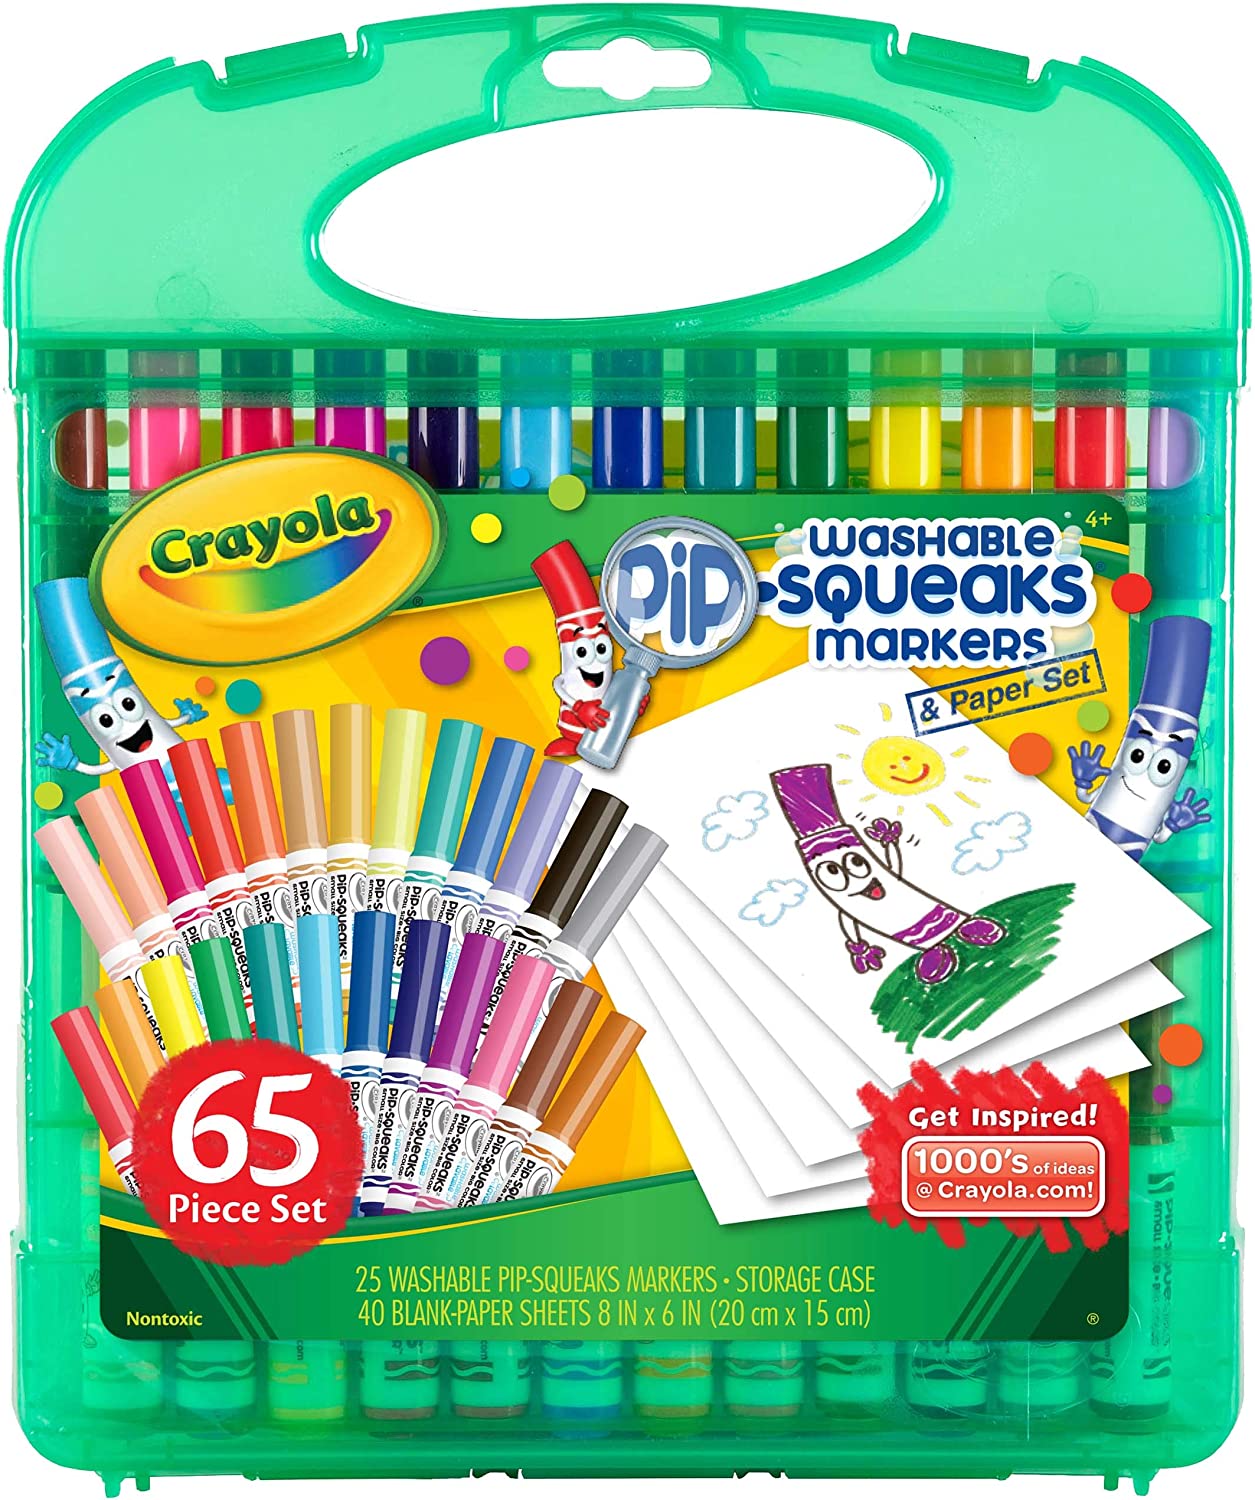 Crayola Pipsqueak Marker Sketch case